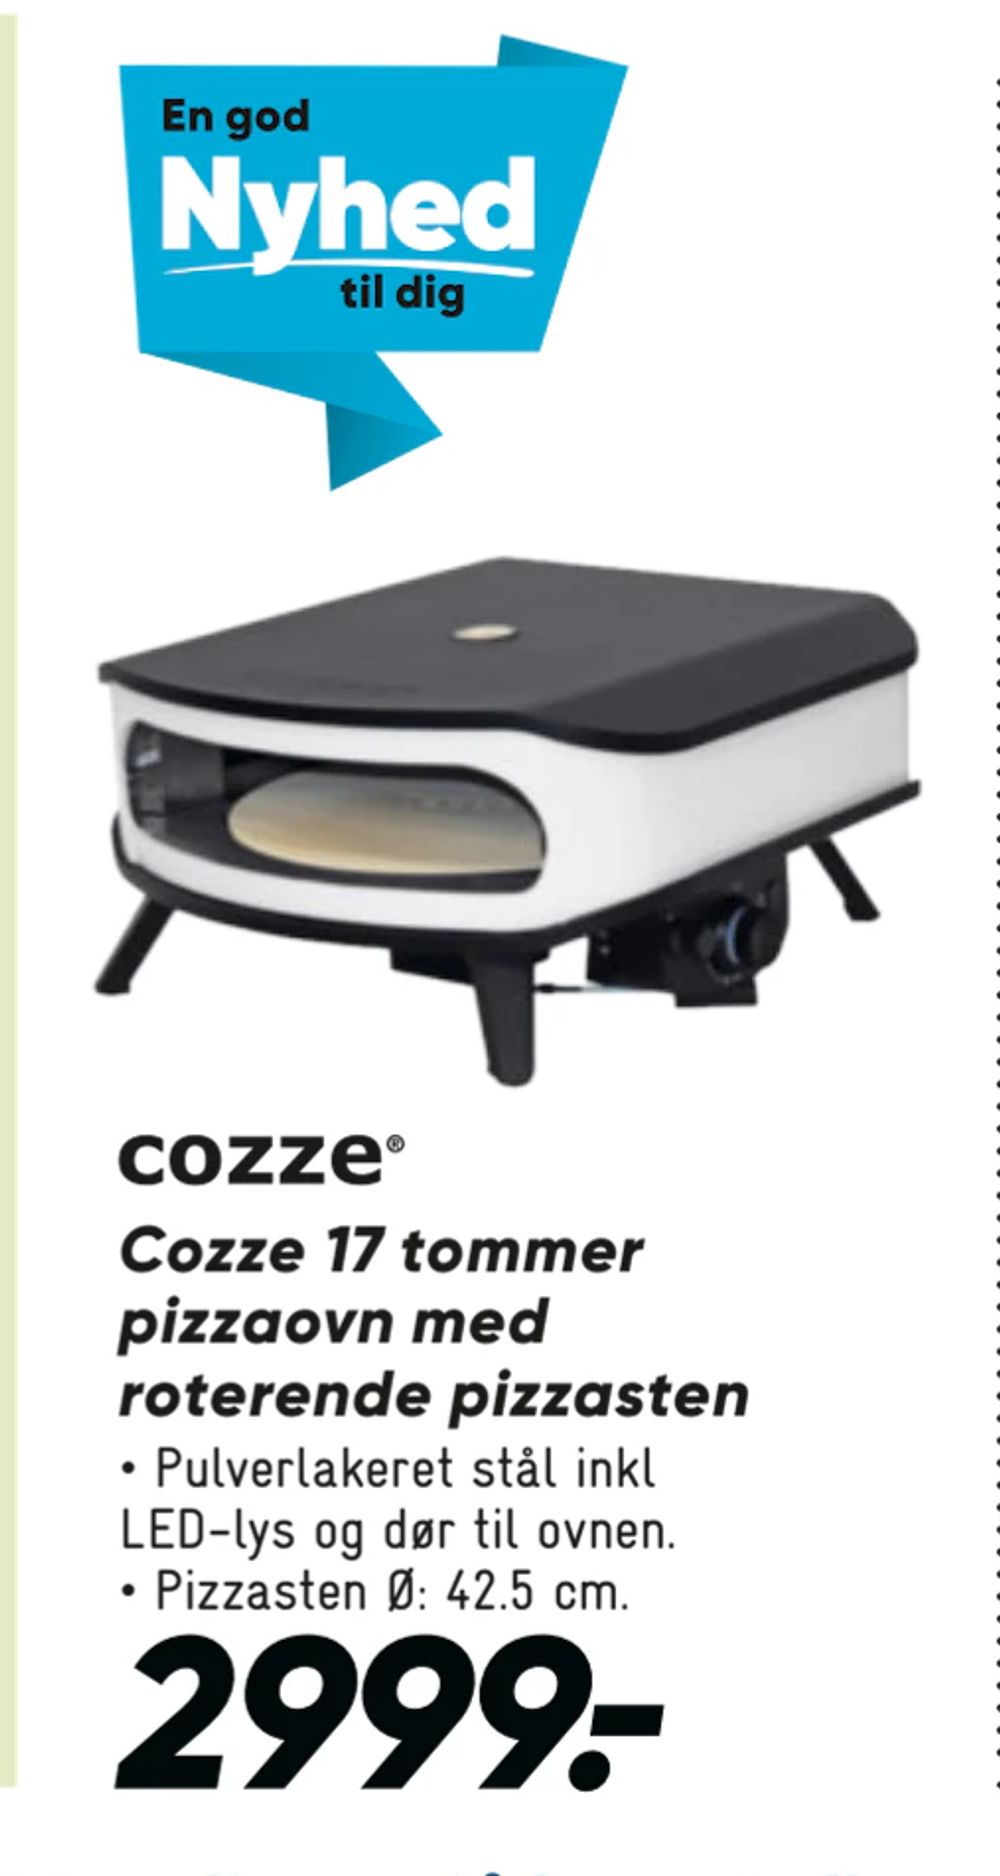 Tilbud på Cozze 17 tommer pizzaovn med roterende pizzasten fra Bilka til 2.999 kr.